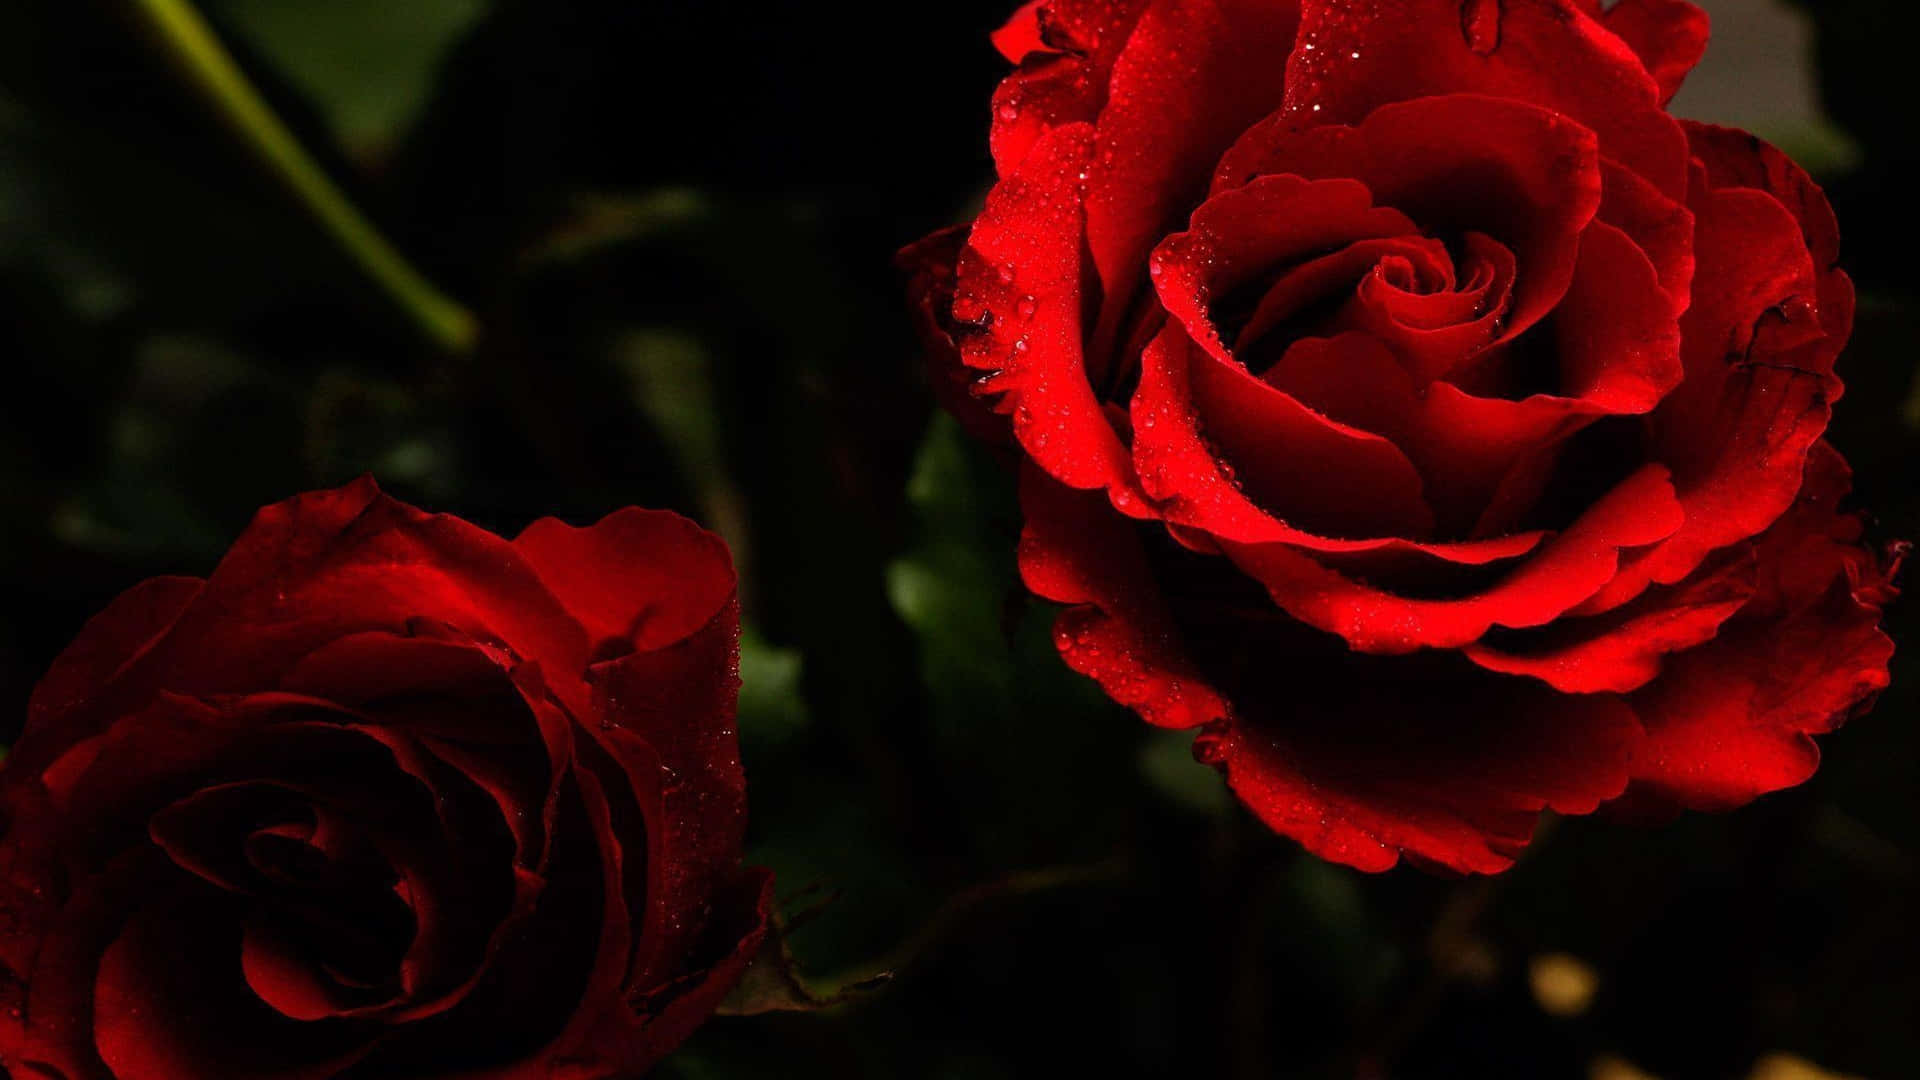 Fondode Pantalla Hermoso De Rosas Rojas En Un Estilo Estético Oscuro De 1080p.